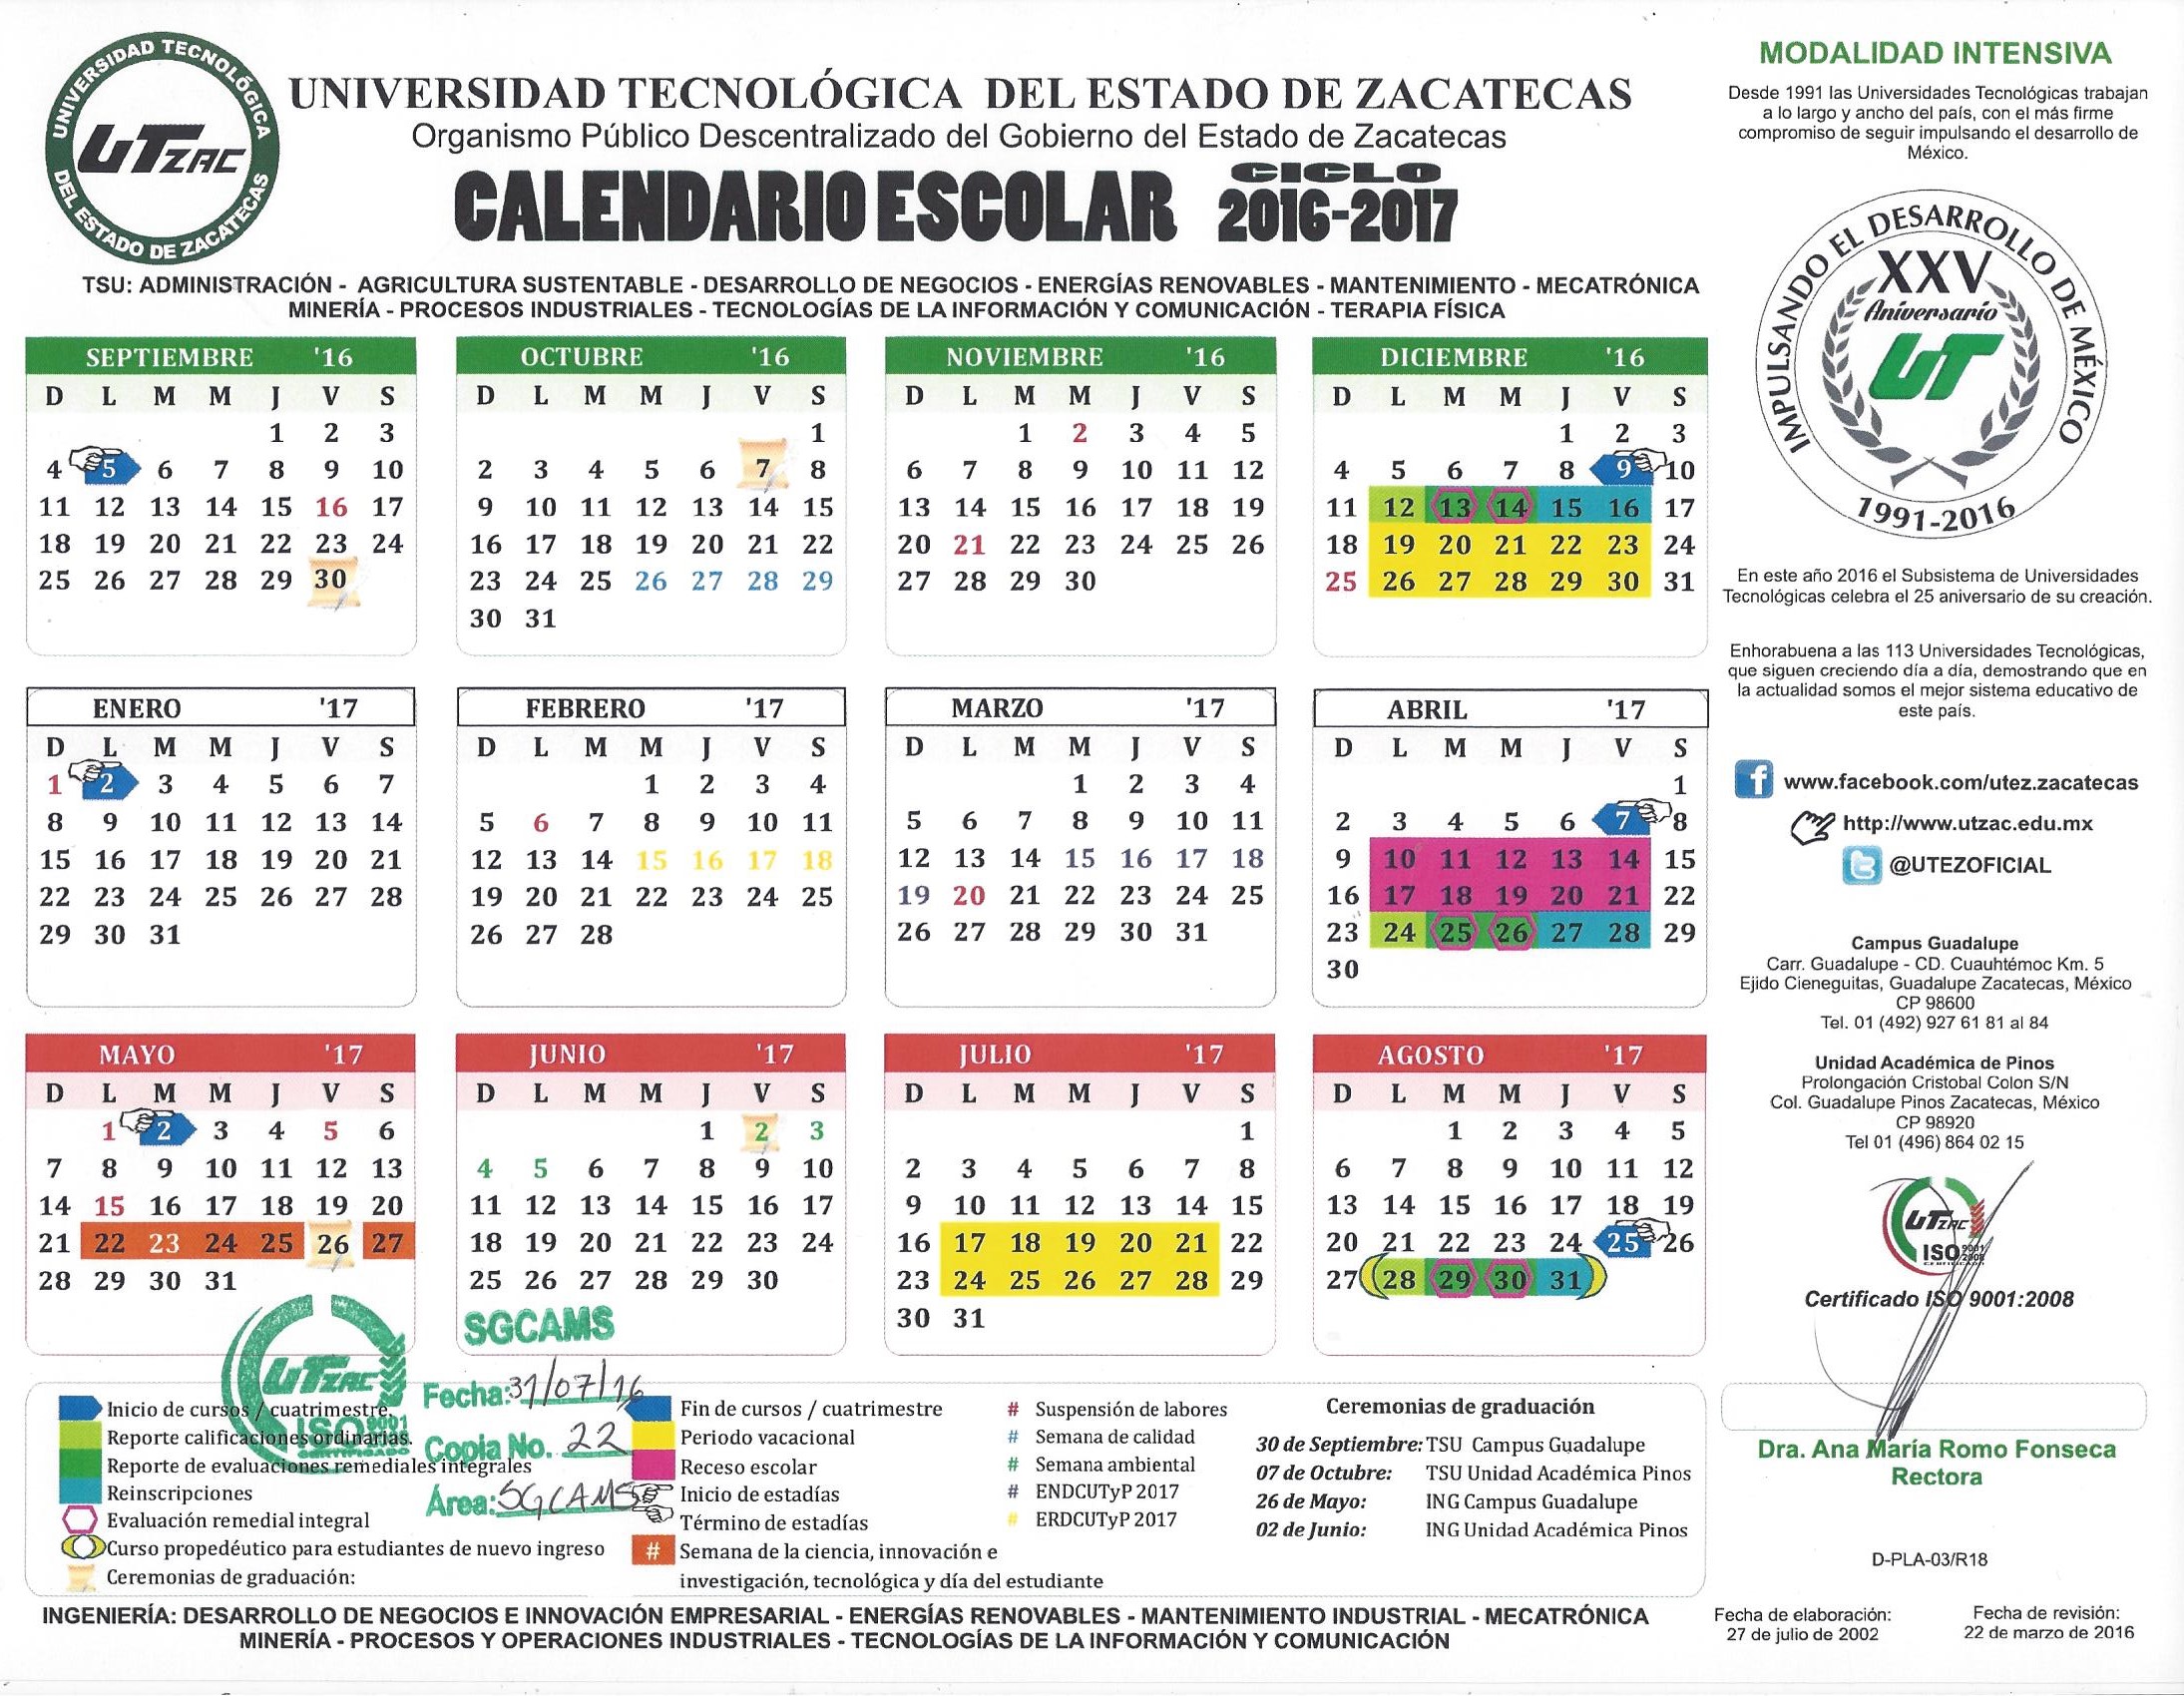 Calendario Oficial del ciclo 2016 – 2017 Mod. Intensiva